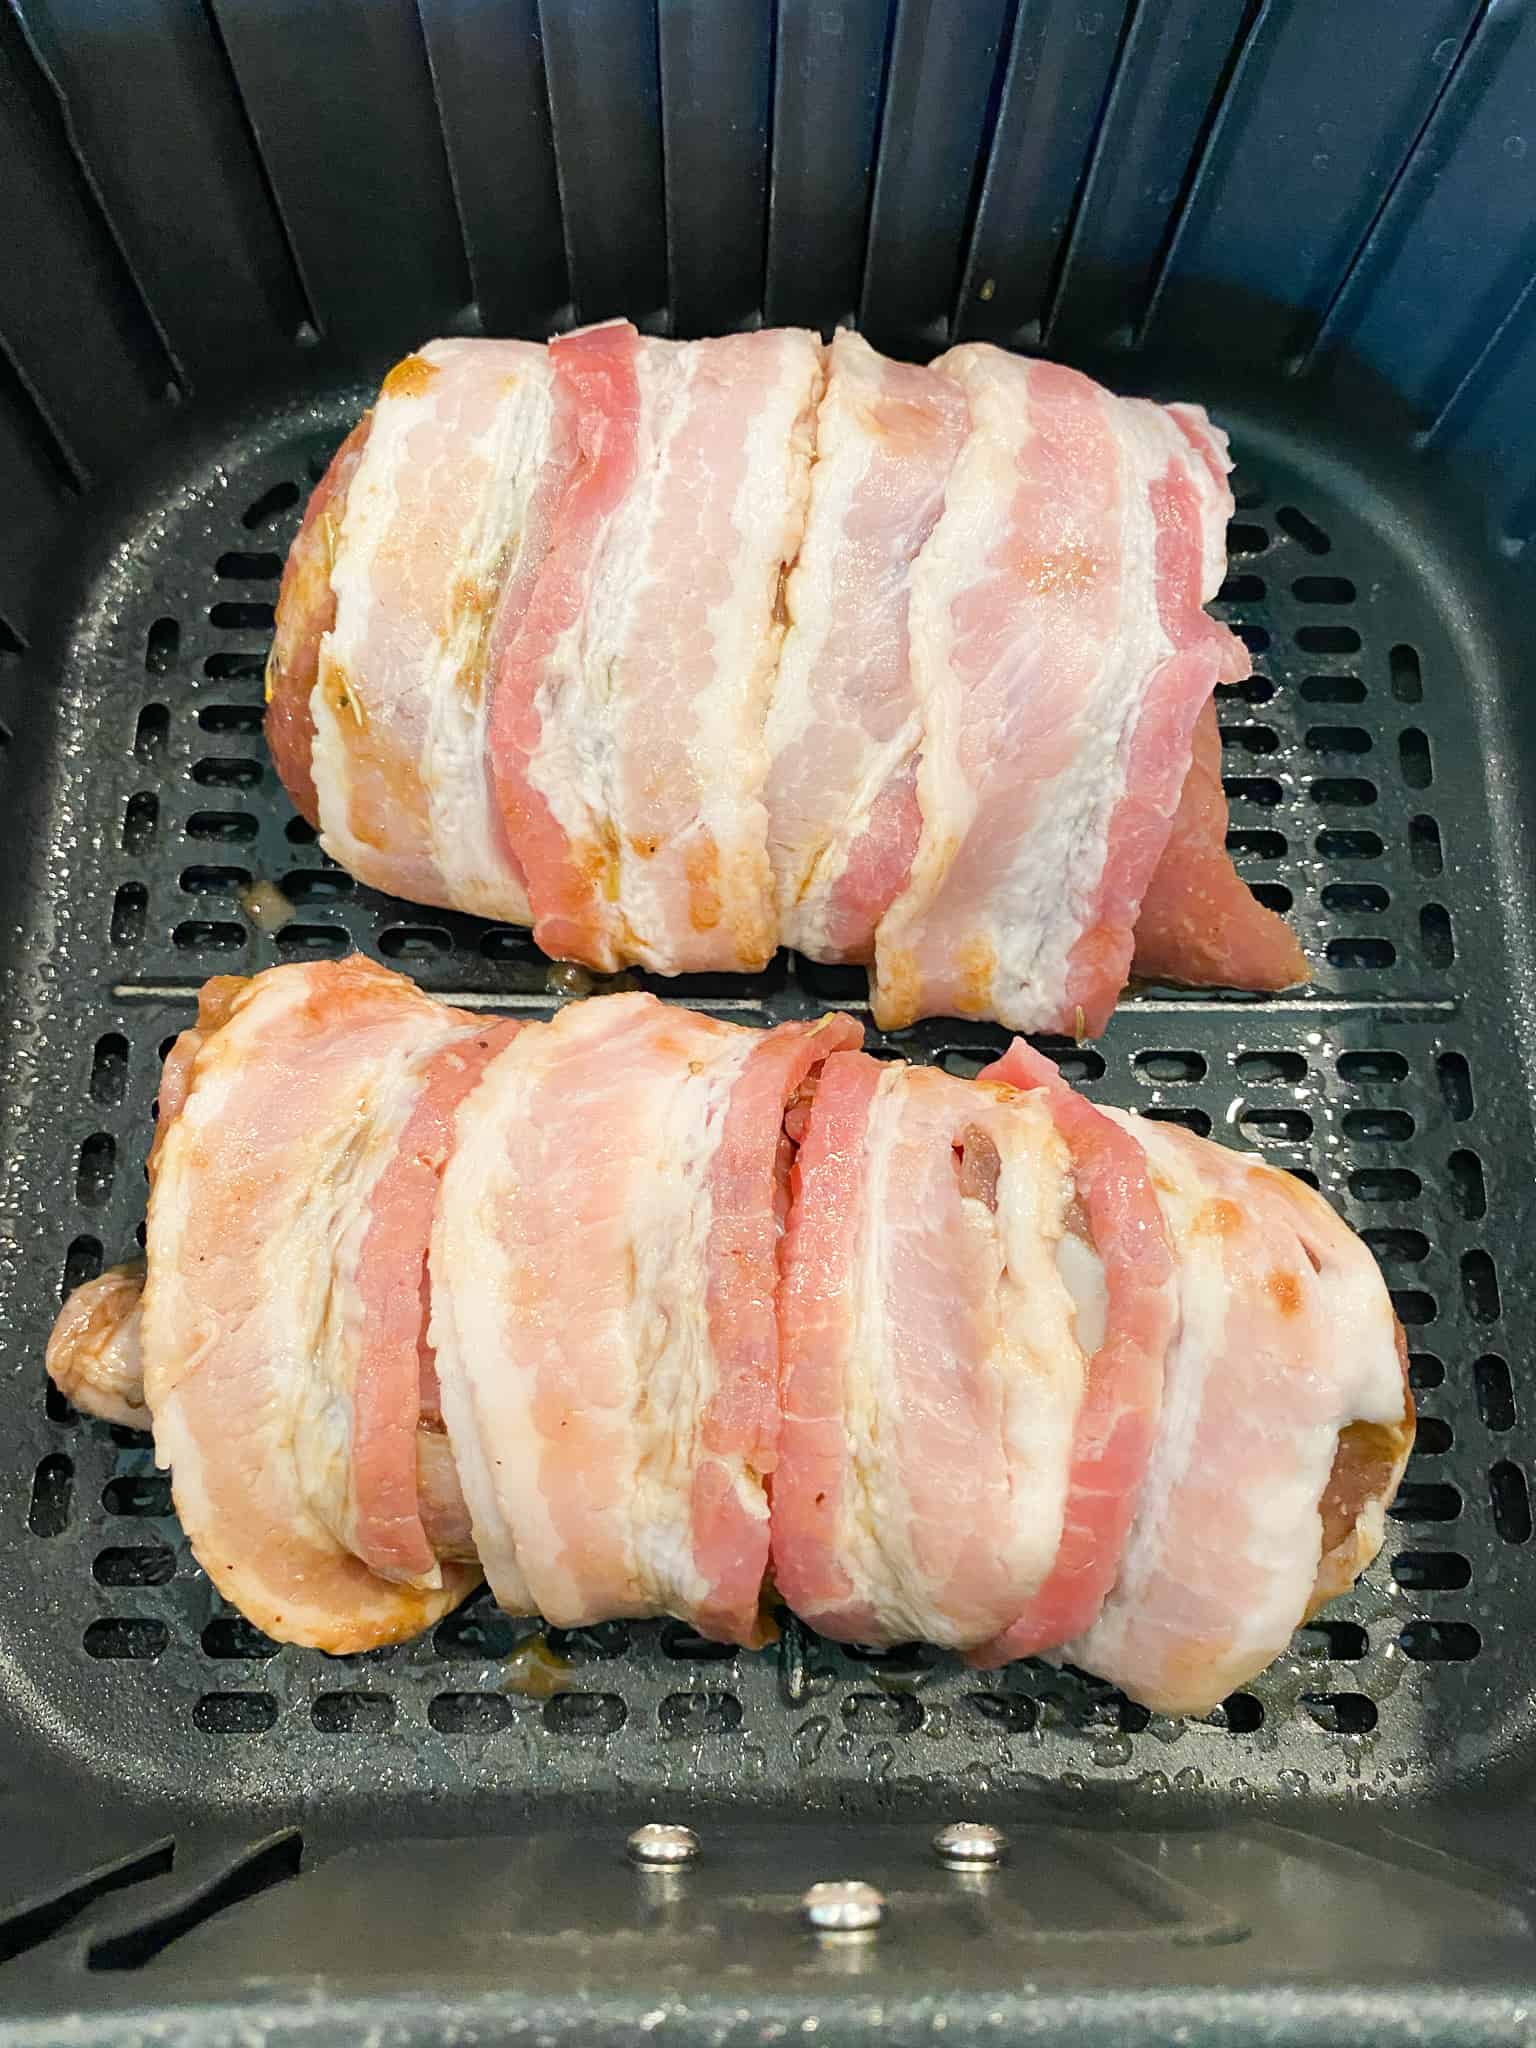 wrap pork tenderloin in bacon slices